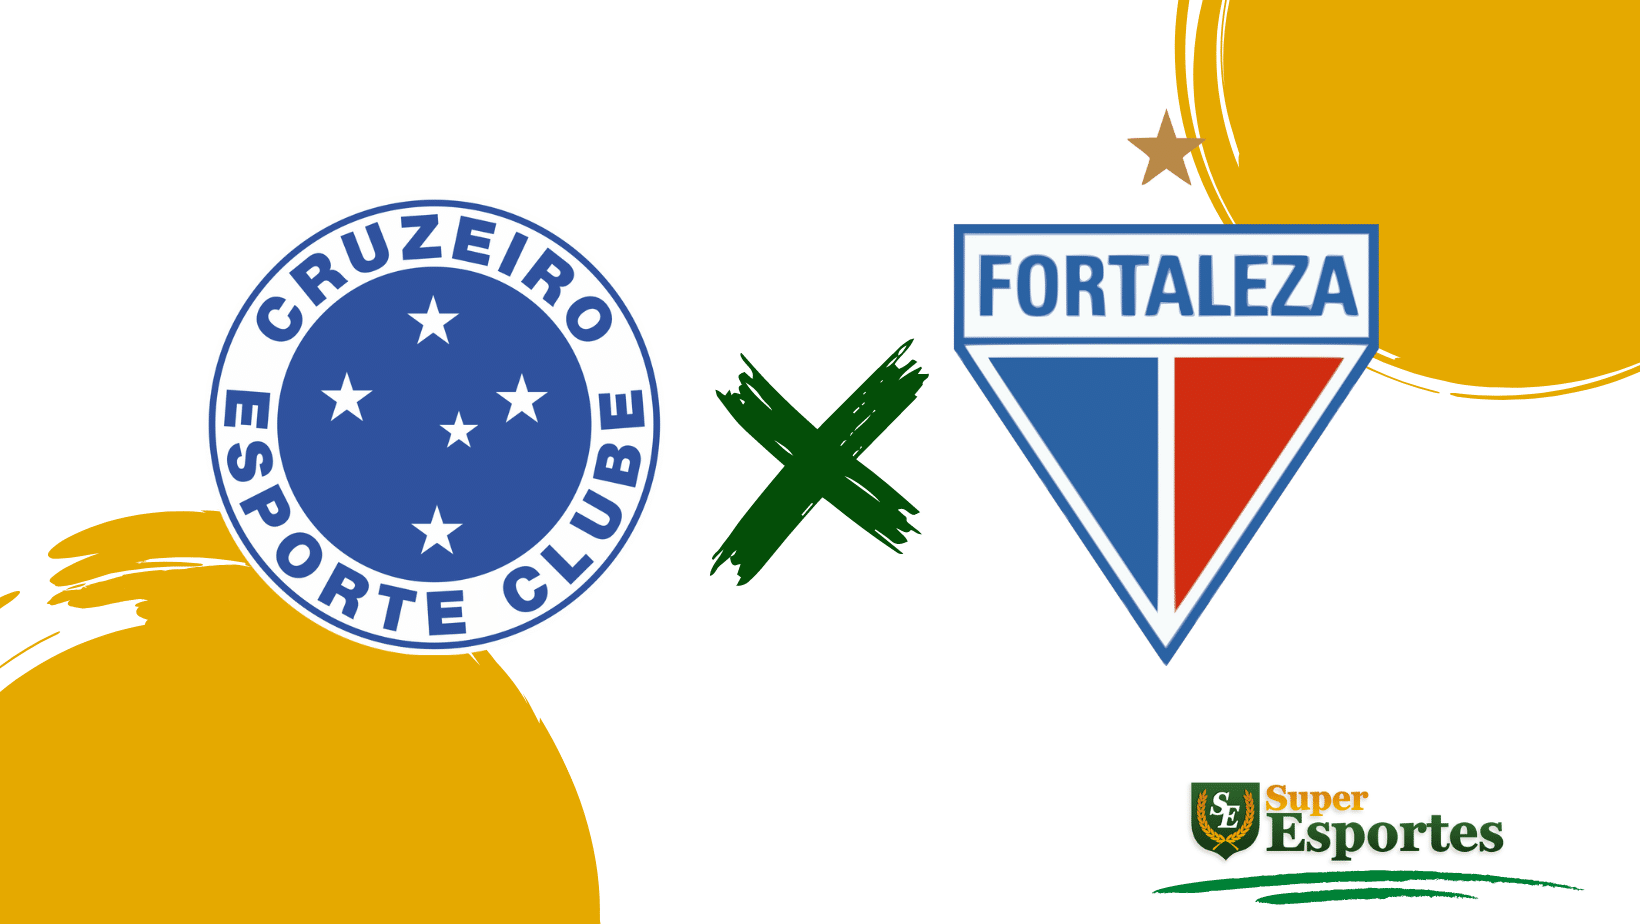 Fortaleza x Cruzeiro: onde assistir ao vivo, horário e prováveis